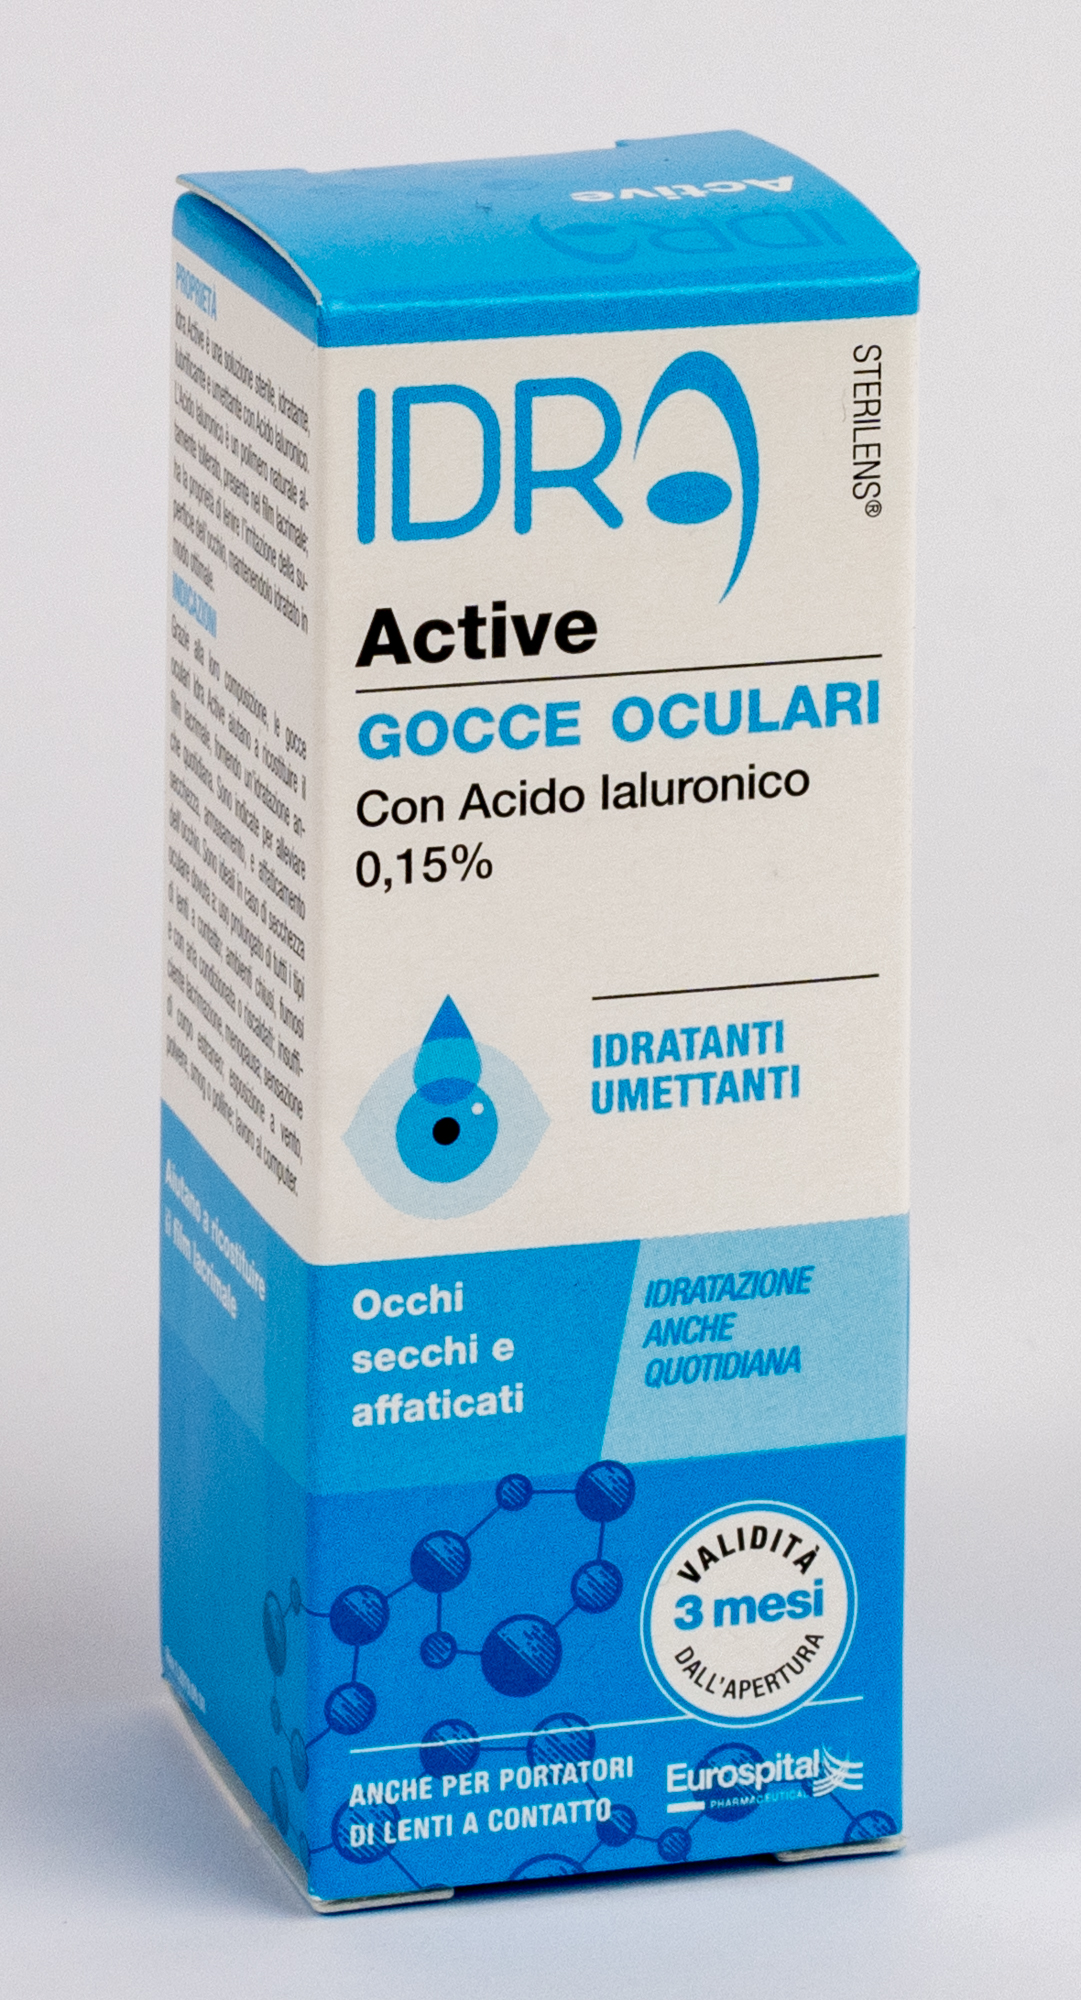 Sterilens Idra Active 10ml gocce oculari con acido ialuronico